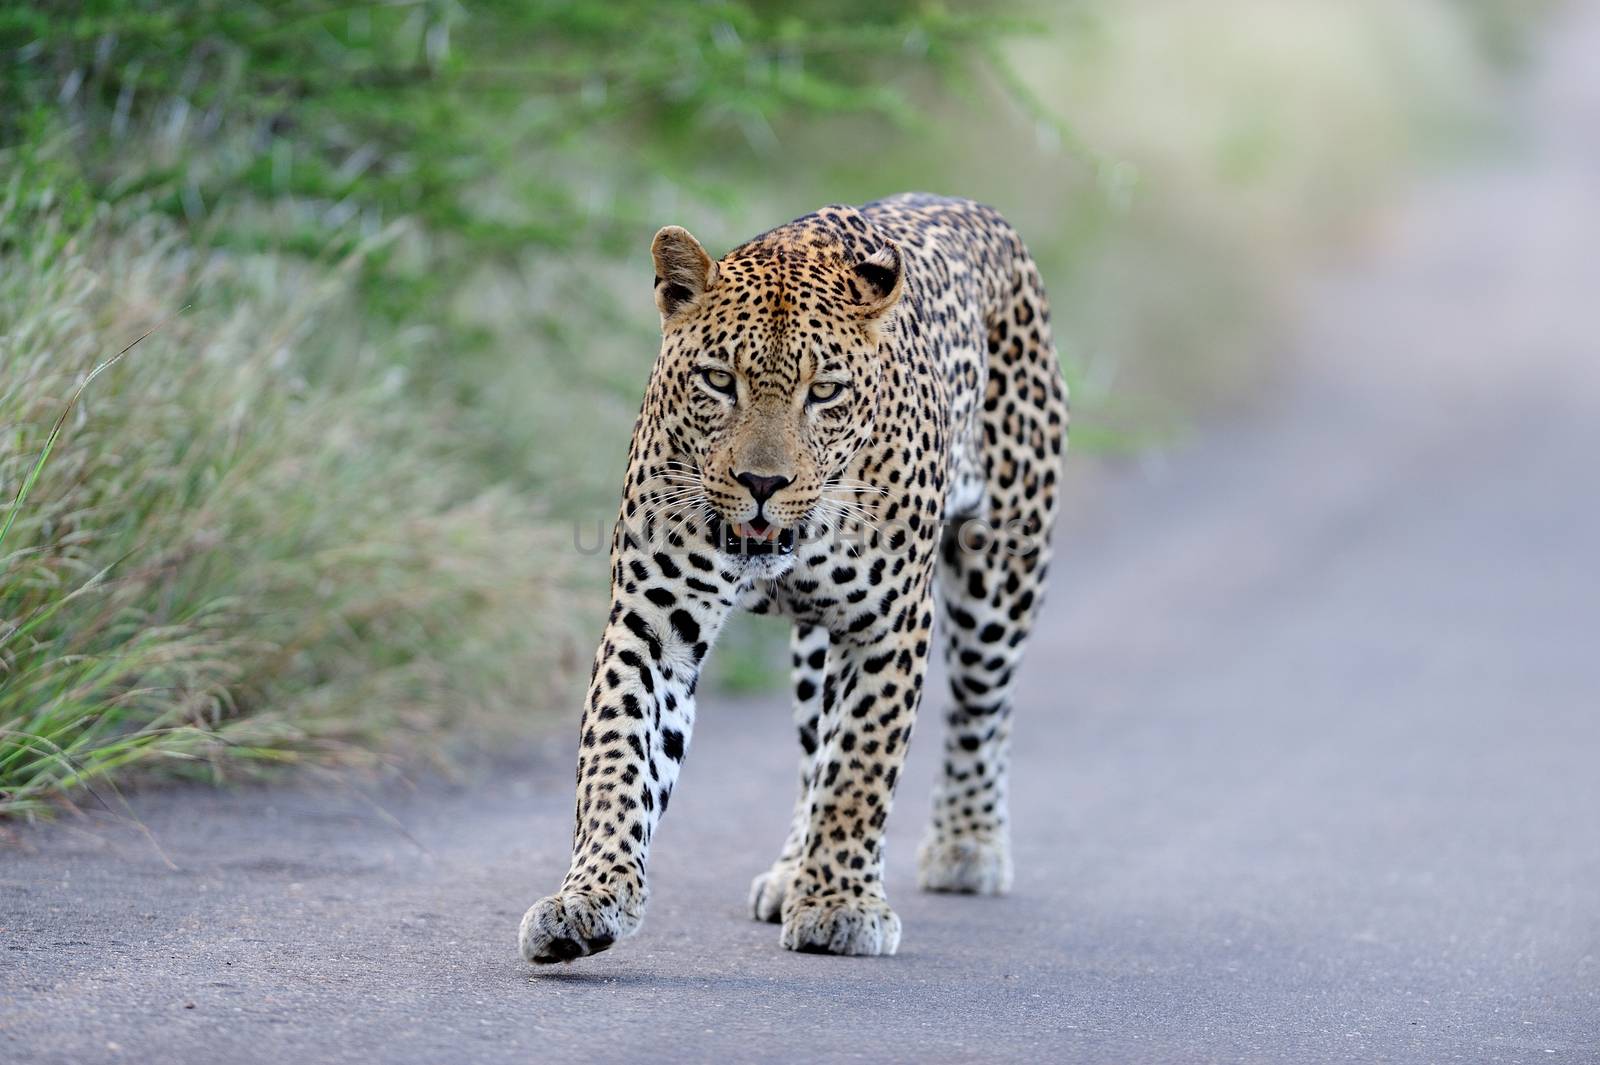 Leopard in the wilderness by ozkanzozmen